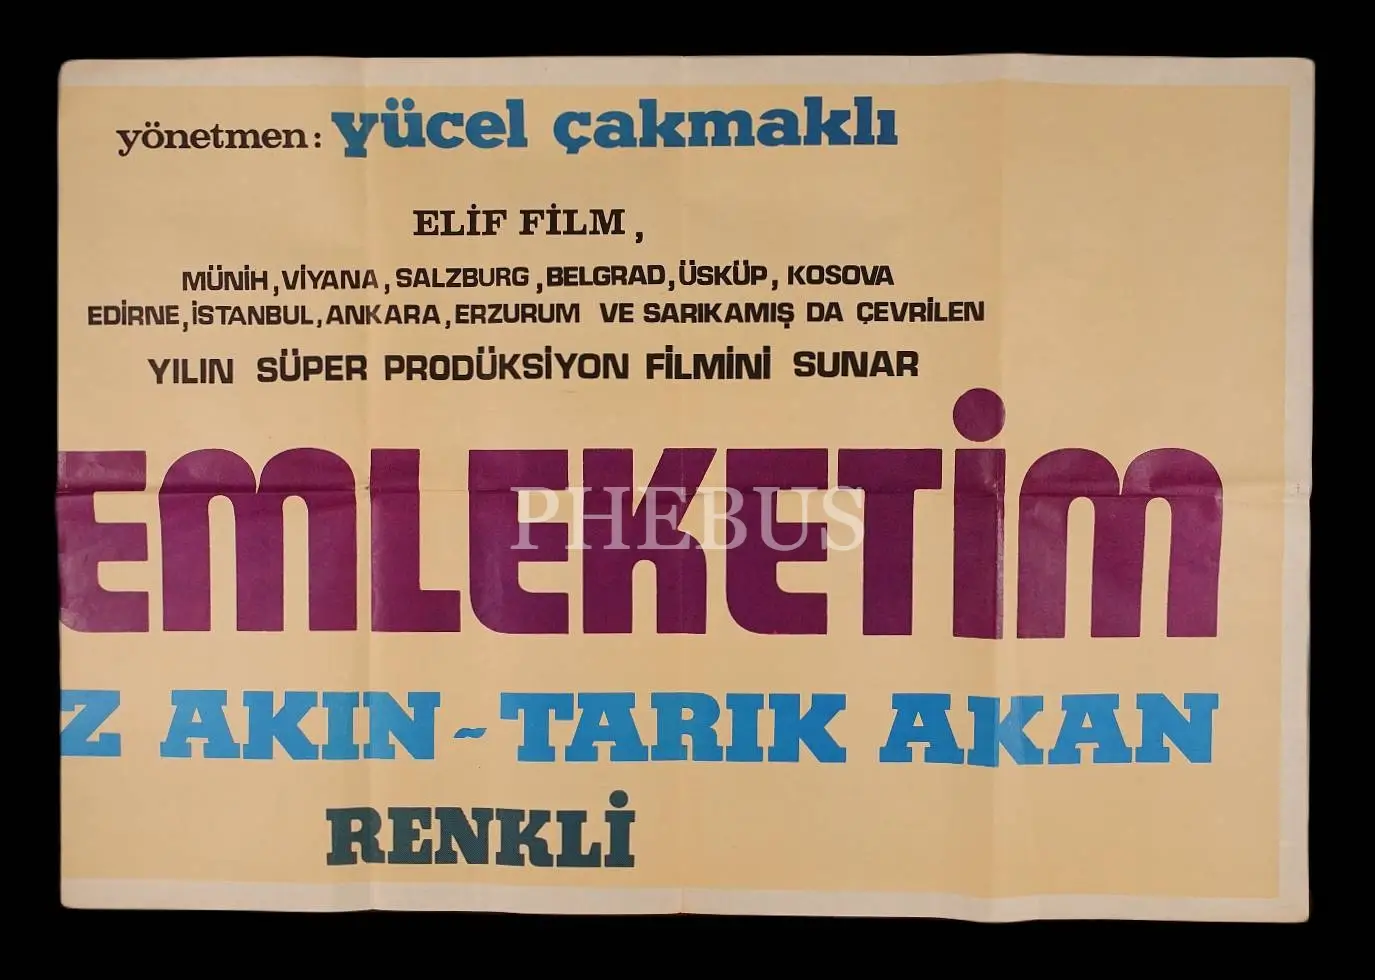 MEMLEKETİM (Elif Film), Filiz Akın - Tarık Akan, 198x68 cm (iki parça halinde, dev boy)...